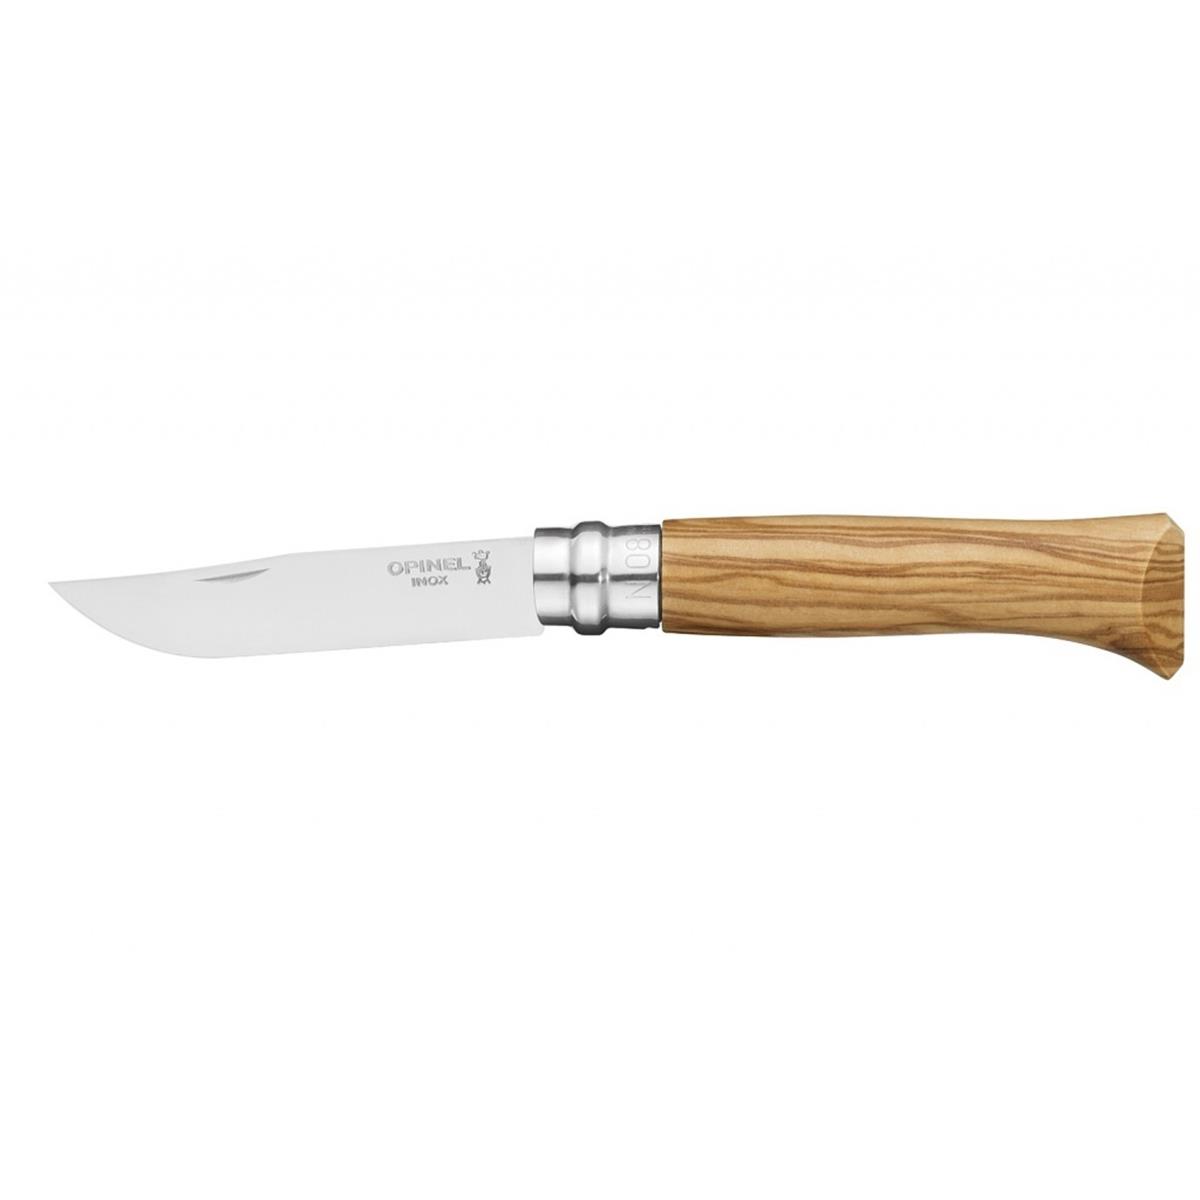 Нож филейный №8 VRI Folding Slim Olivewood нерж.сталь, длина клинка 8см (0011443) OPINEL кастрюля 5 1 л нерж